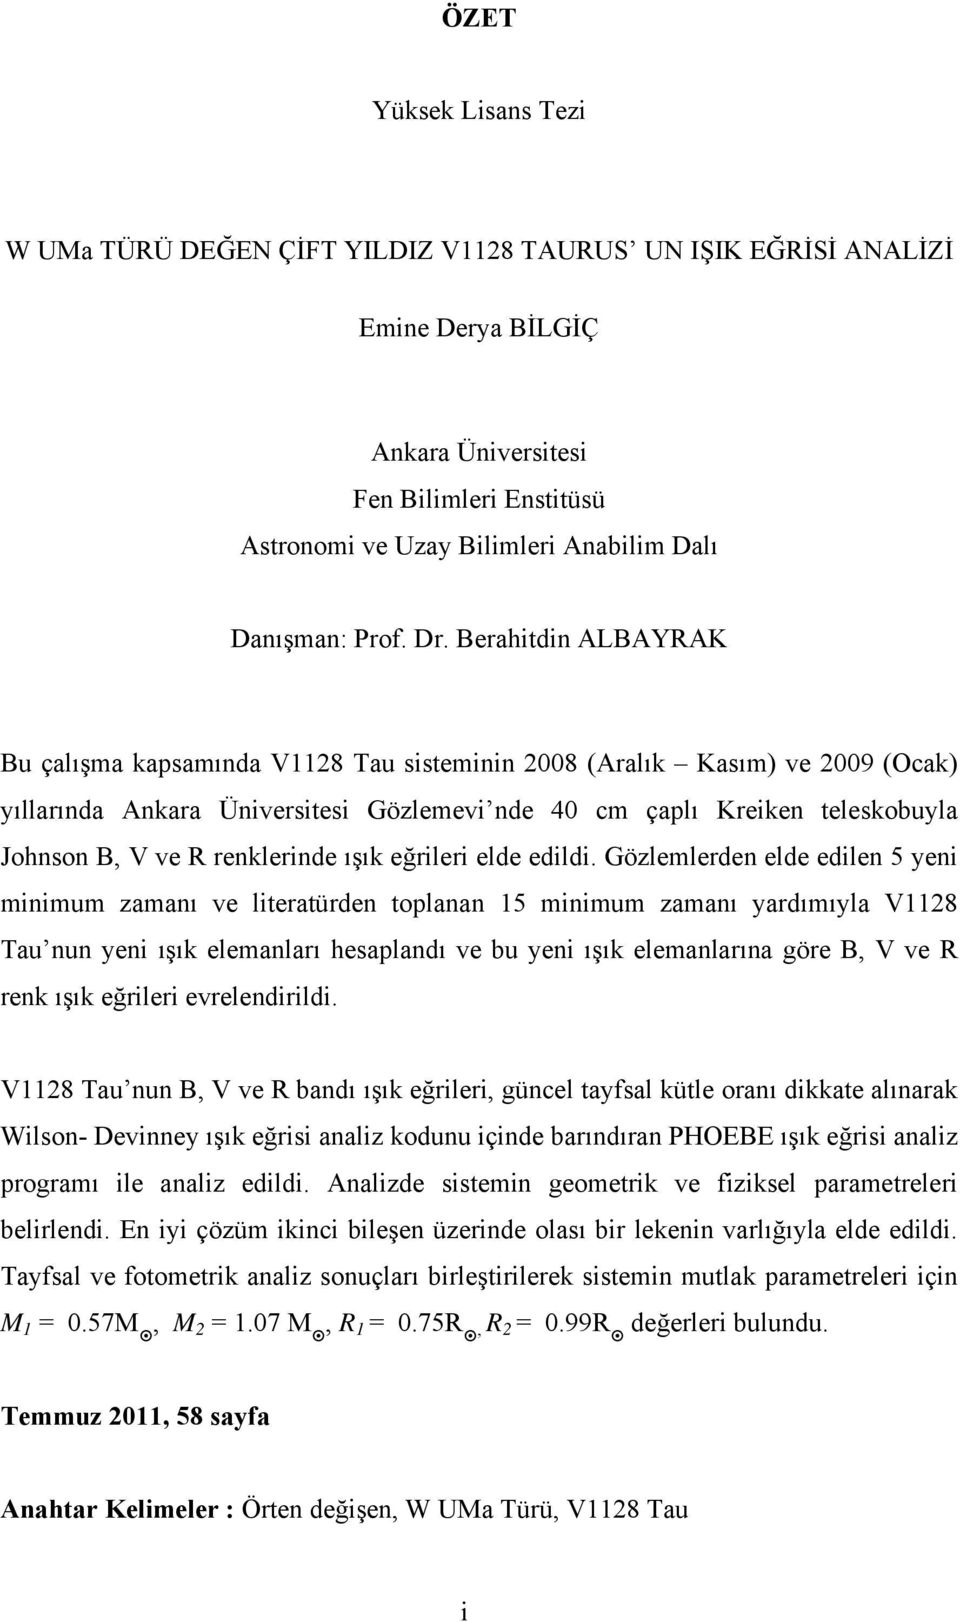 Berahitdin ALBAYRAK Bu çalışma kapsamında V1128 Tau sisteminin 2008 (Aralık Kasım) ve 2009 (Ocak) yıllarında Ankara Üniversitesi Gözlemevi nde 40 cm çaplı Kreiken teleskobuyla Johnson B, V ve R